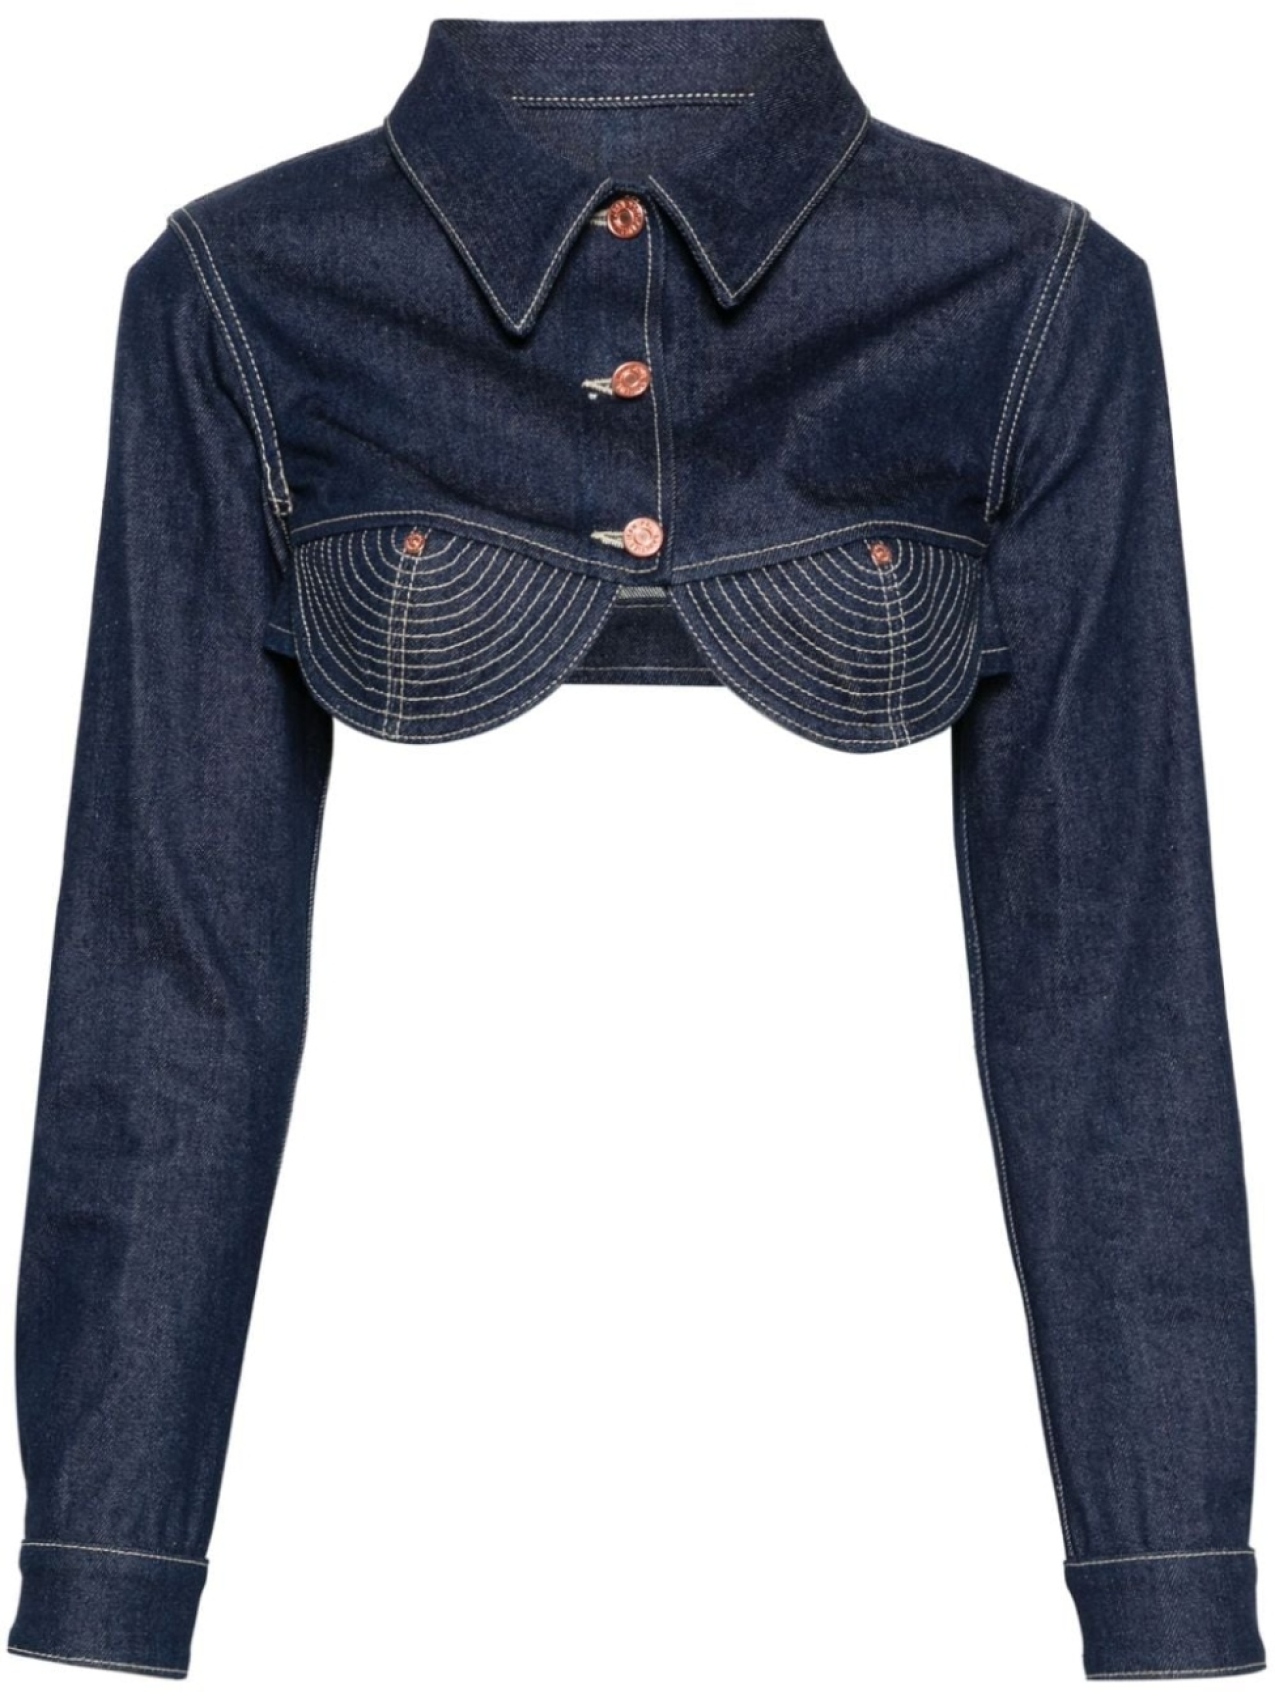 Укороченная джинсовая куртка Conical Jean Paul Gaultier, синяя